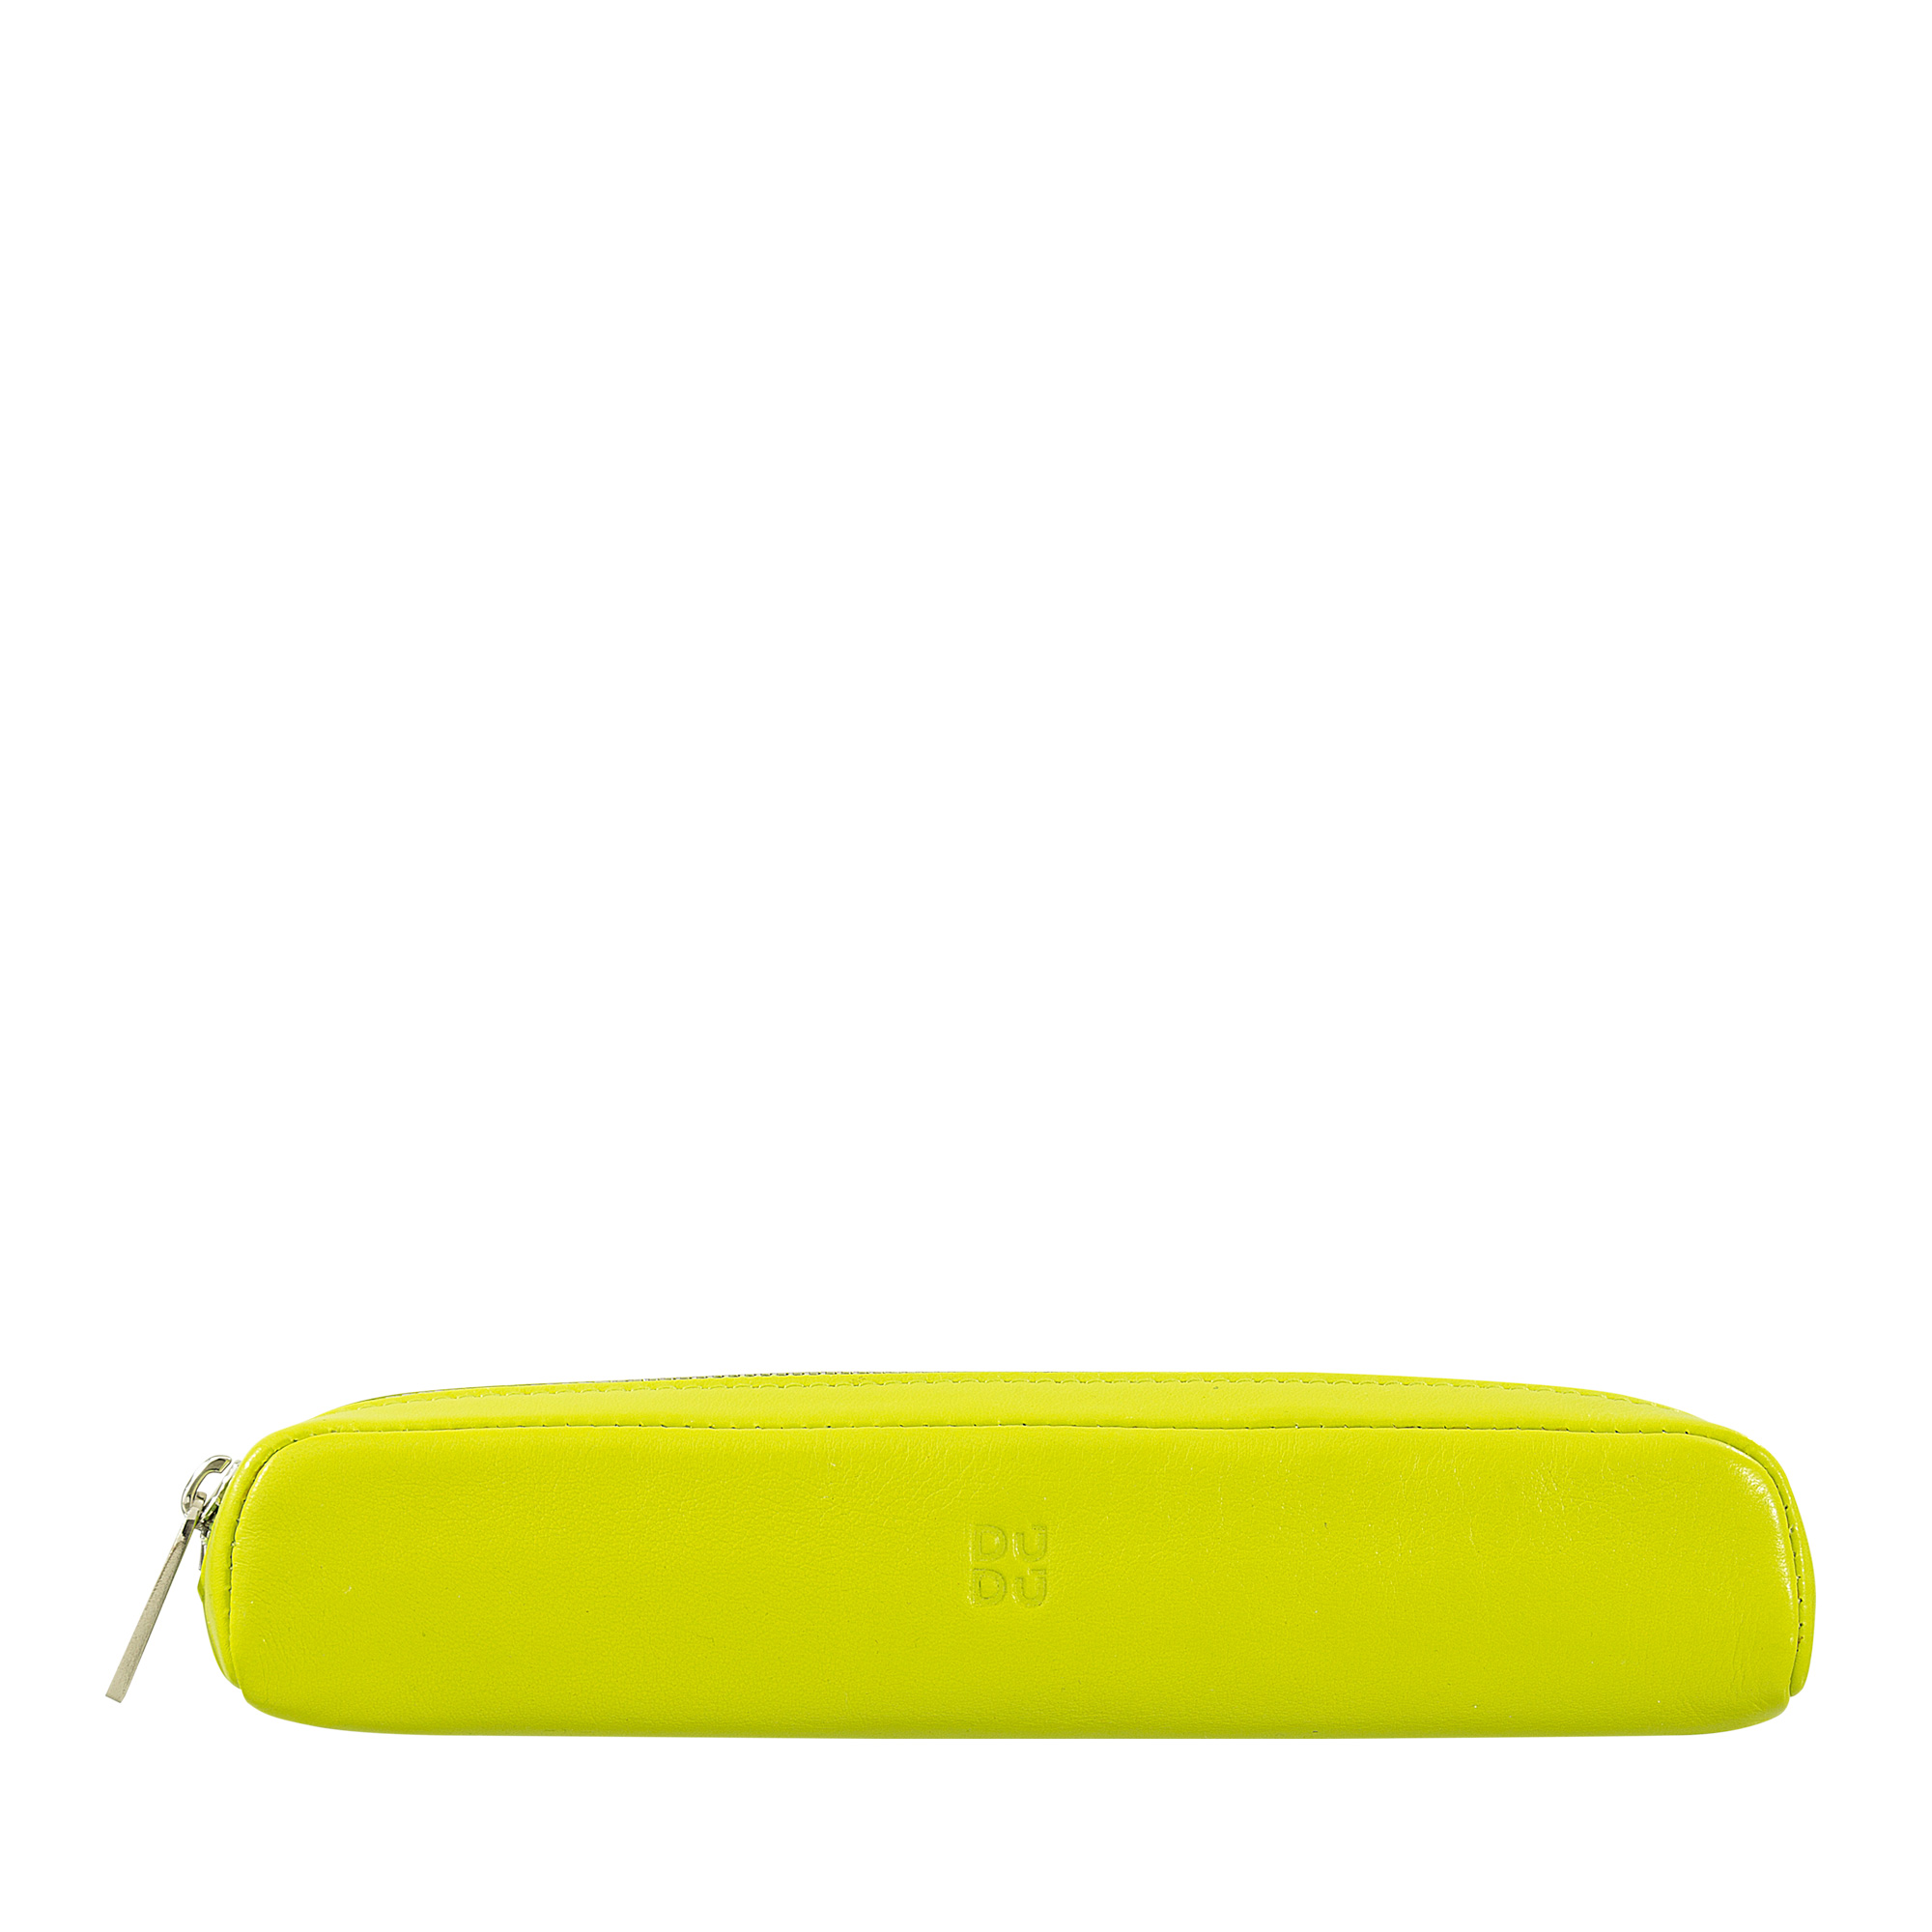 Colorful - Pencil case - Lime